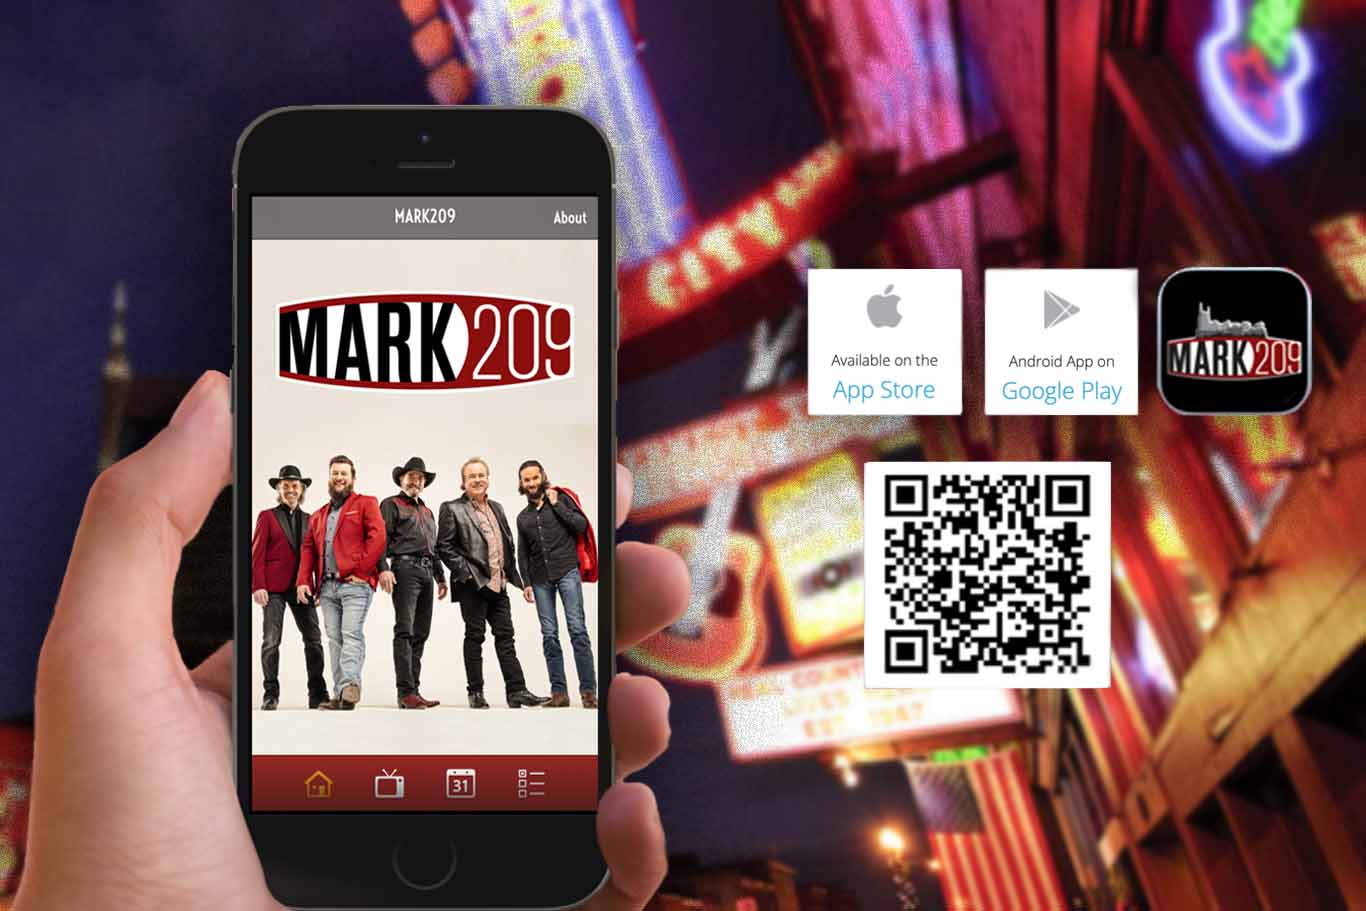 MARK209 App